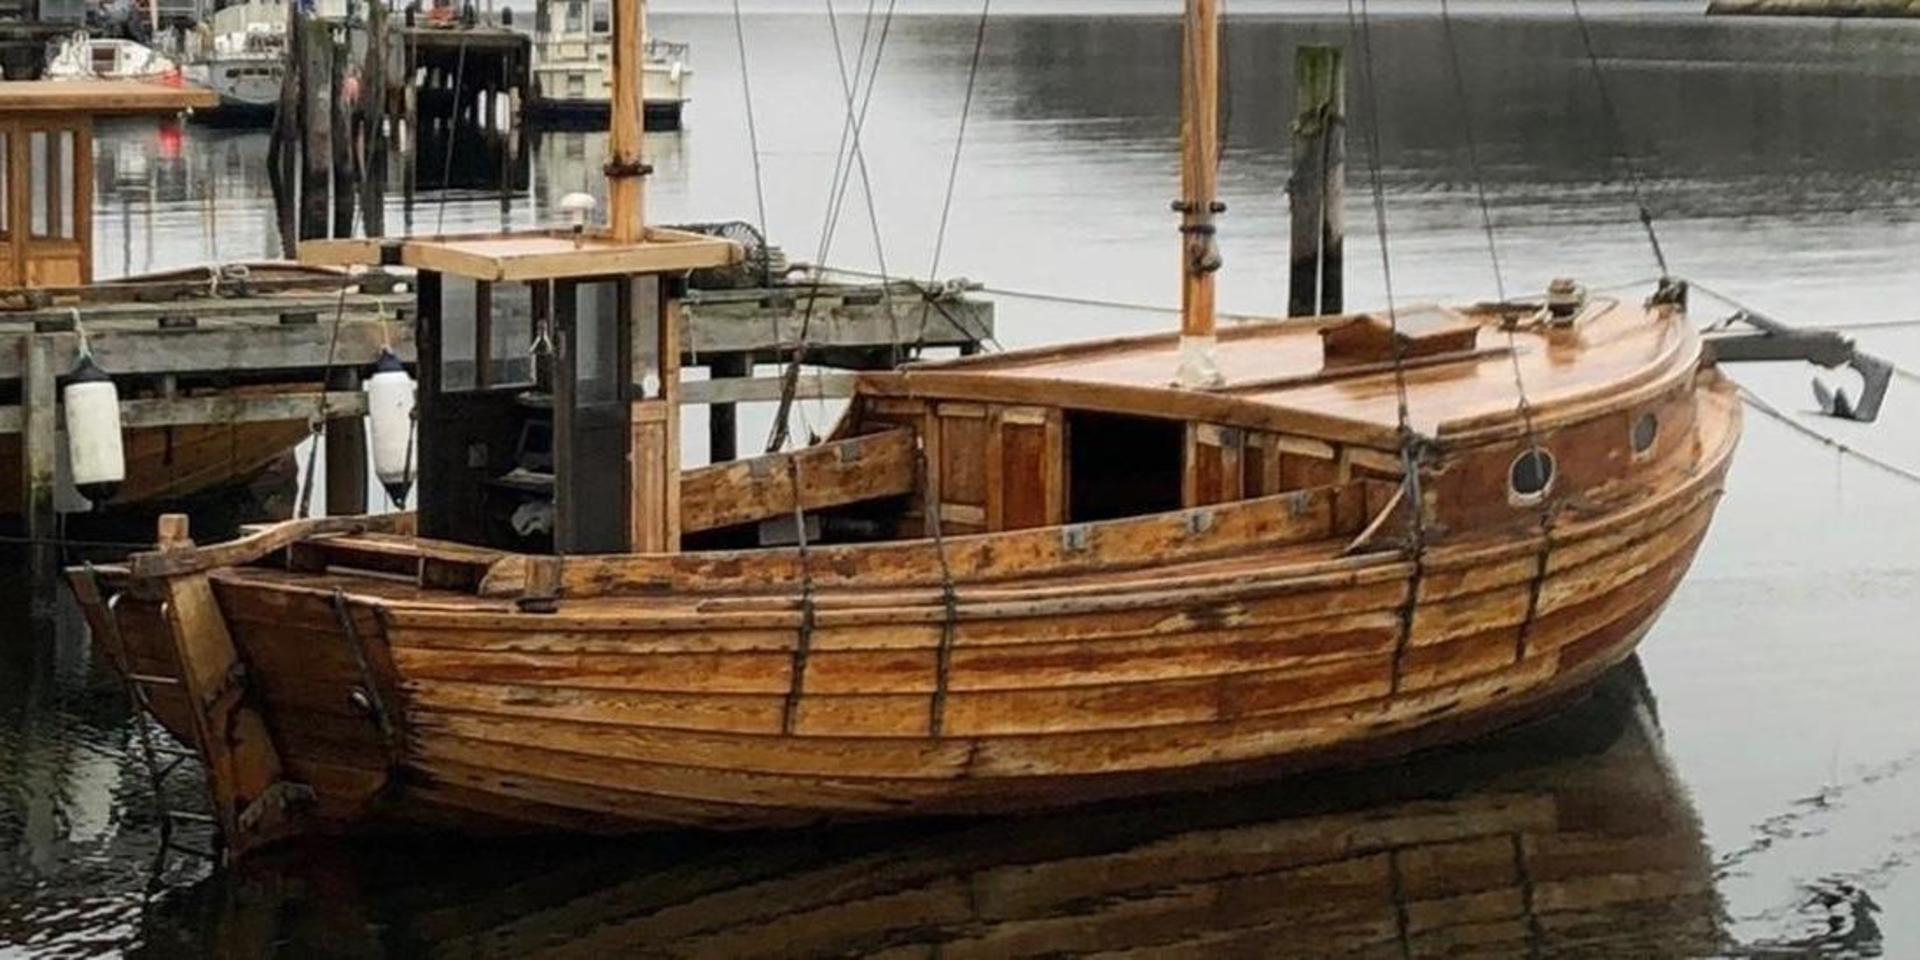 Träbåten Tuffa är världsberömd efter sin medverkan i otaliga utländska magasin och tv-kanaler. Men hon är spårlöst försvunnen. Vrakdelar hittade i närheten av hennes brygga.